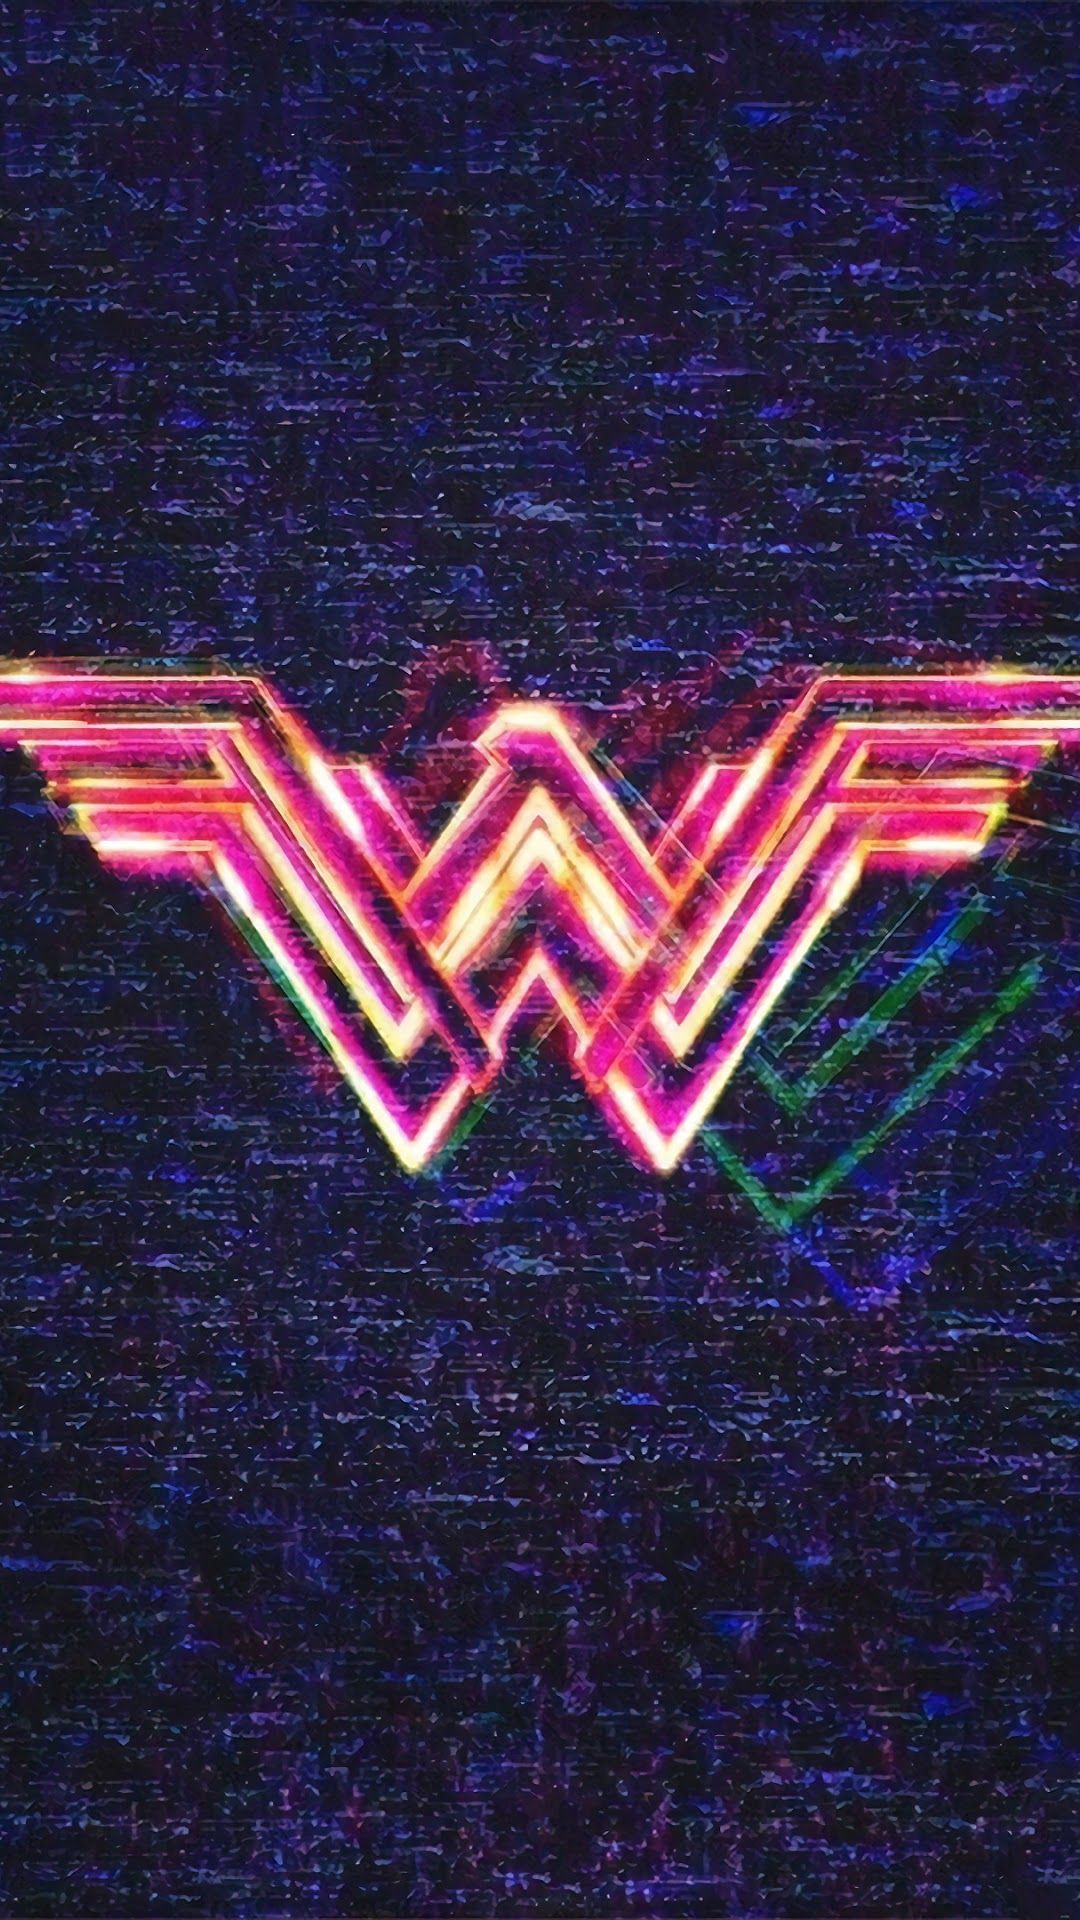 Wonder Woman 1984 Logo 4K Wallpaper uhdpaper.com